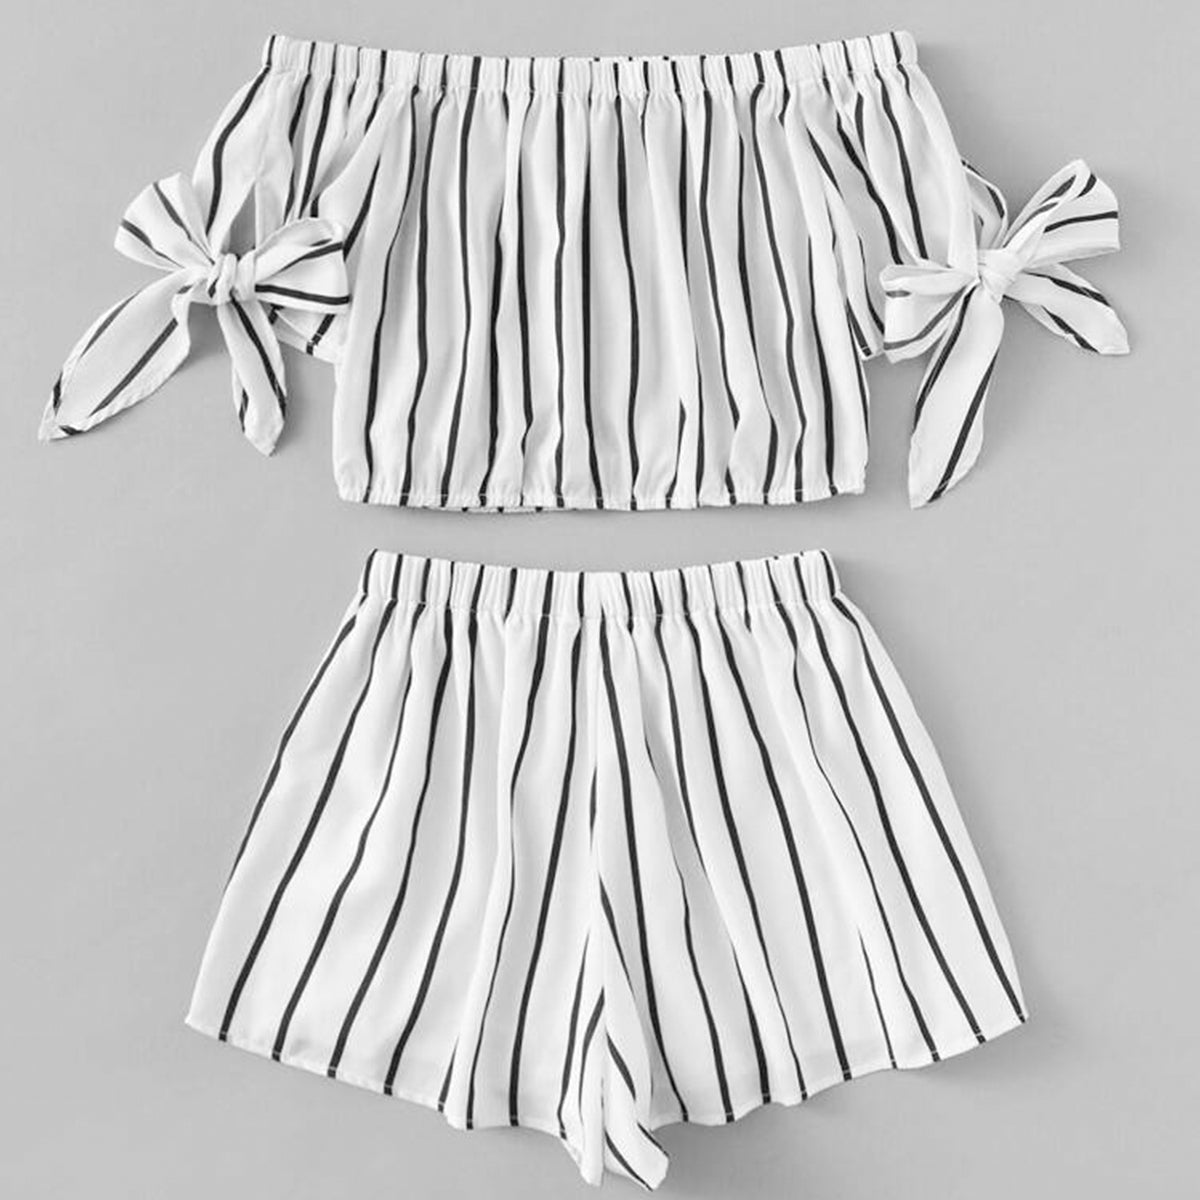 BabyGirl's Off Shoulder Top And Stripes Shorts Set For Kids.